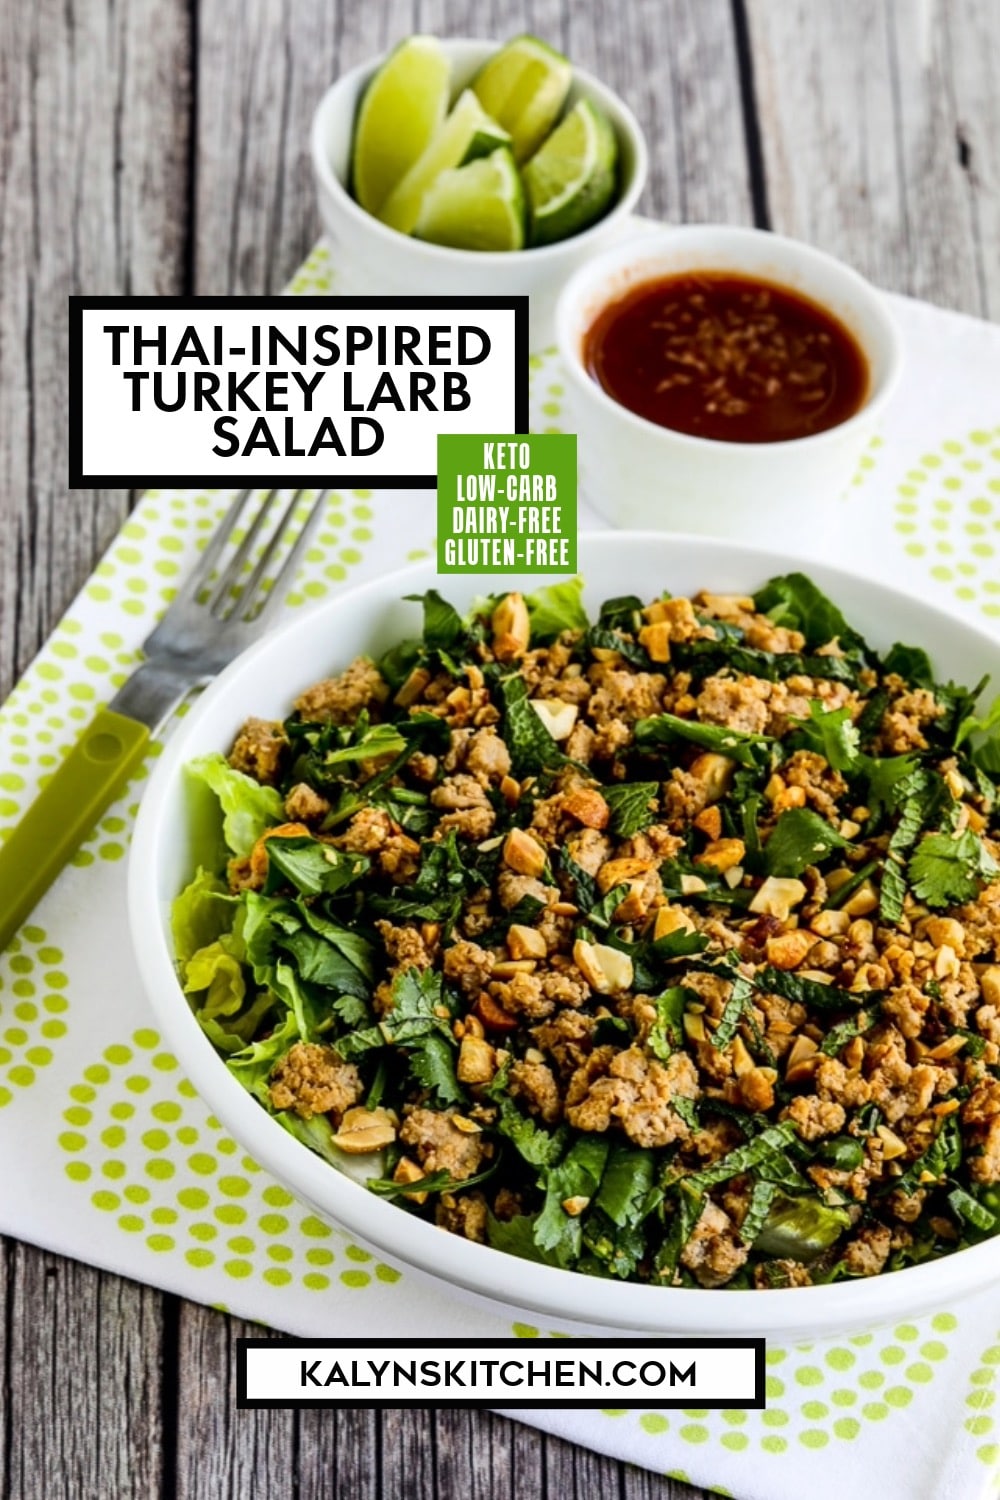 Pinterest image of Thai-Inspired Turkey Larb Salad